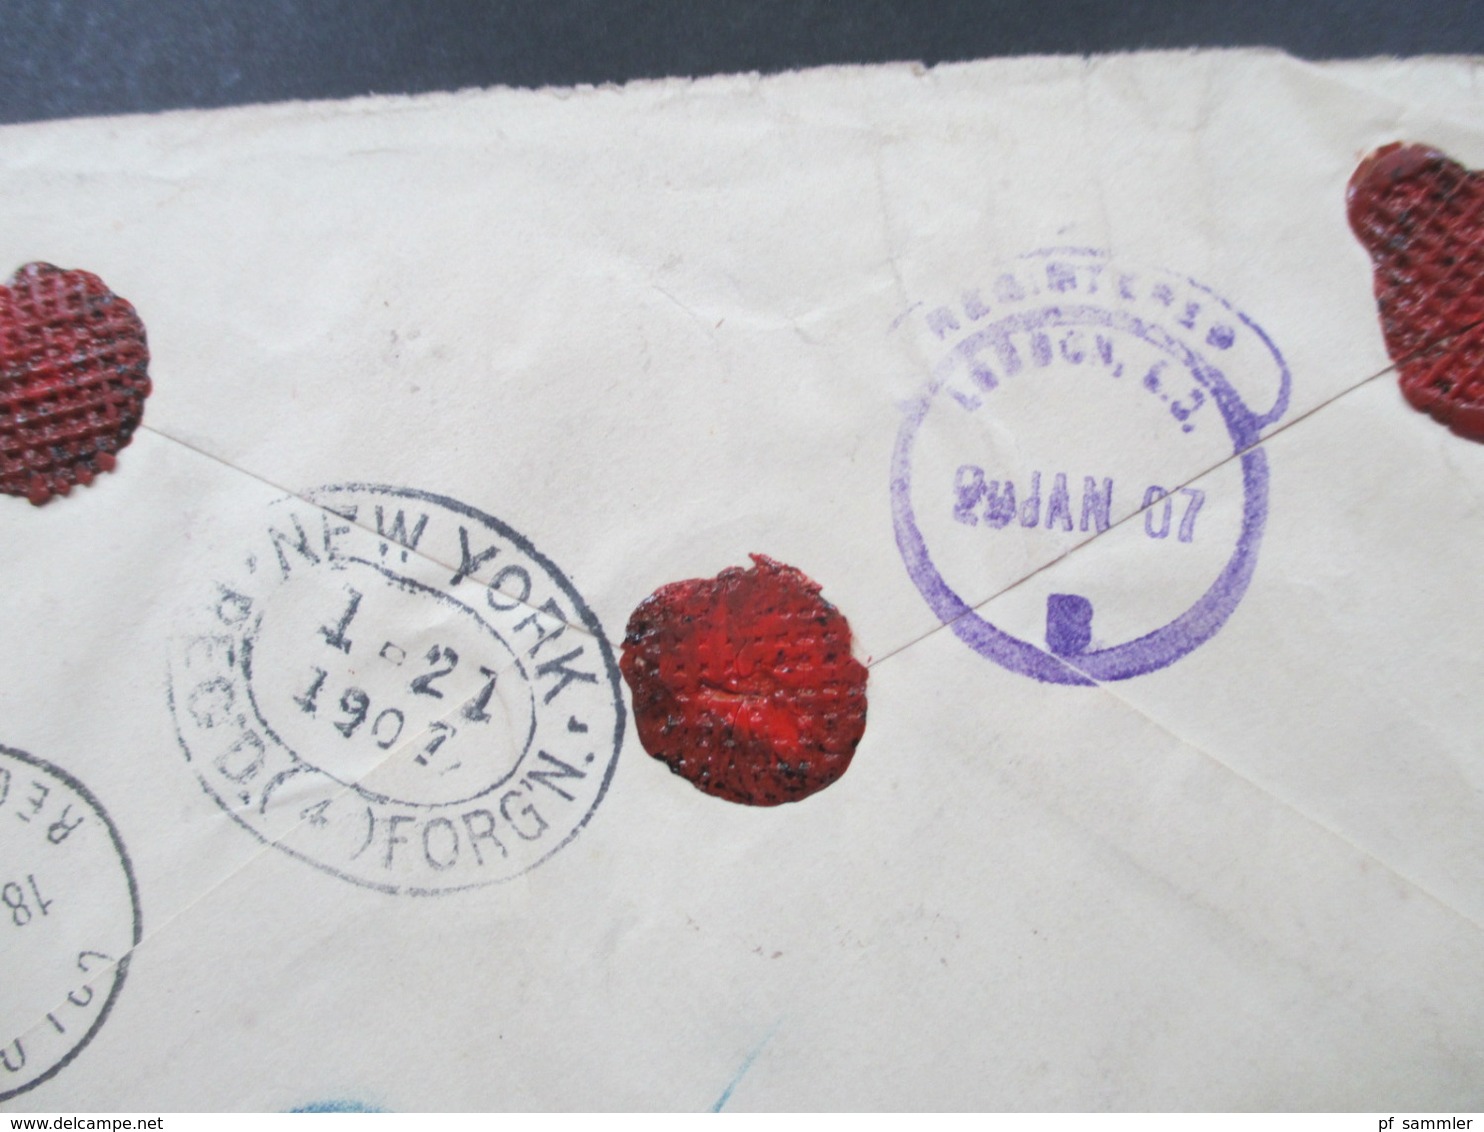 USA 1907 Registered Mail New York Exchange und violetter Stp. Stock Exchange Chicagi ILL. nach Ceylon!! über London